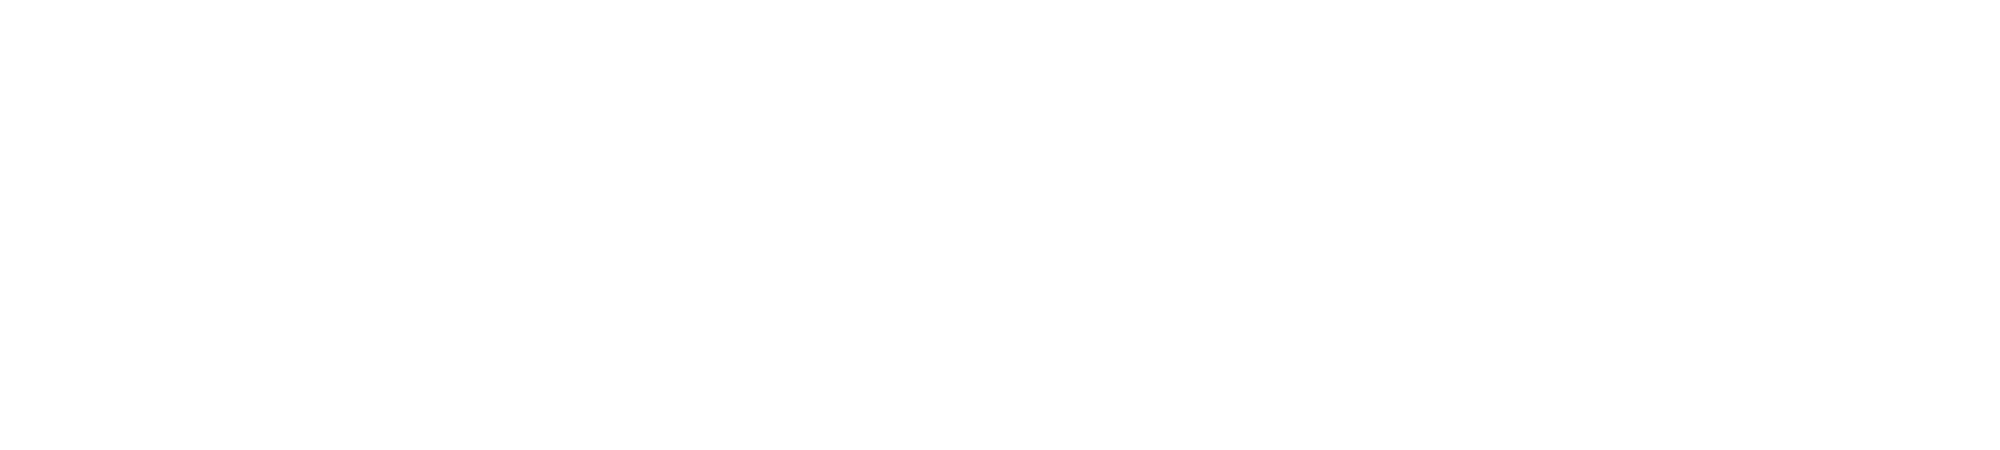 HUS-logo-w